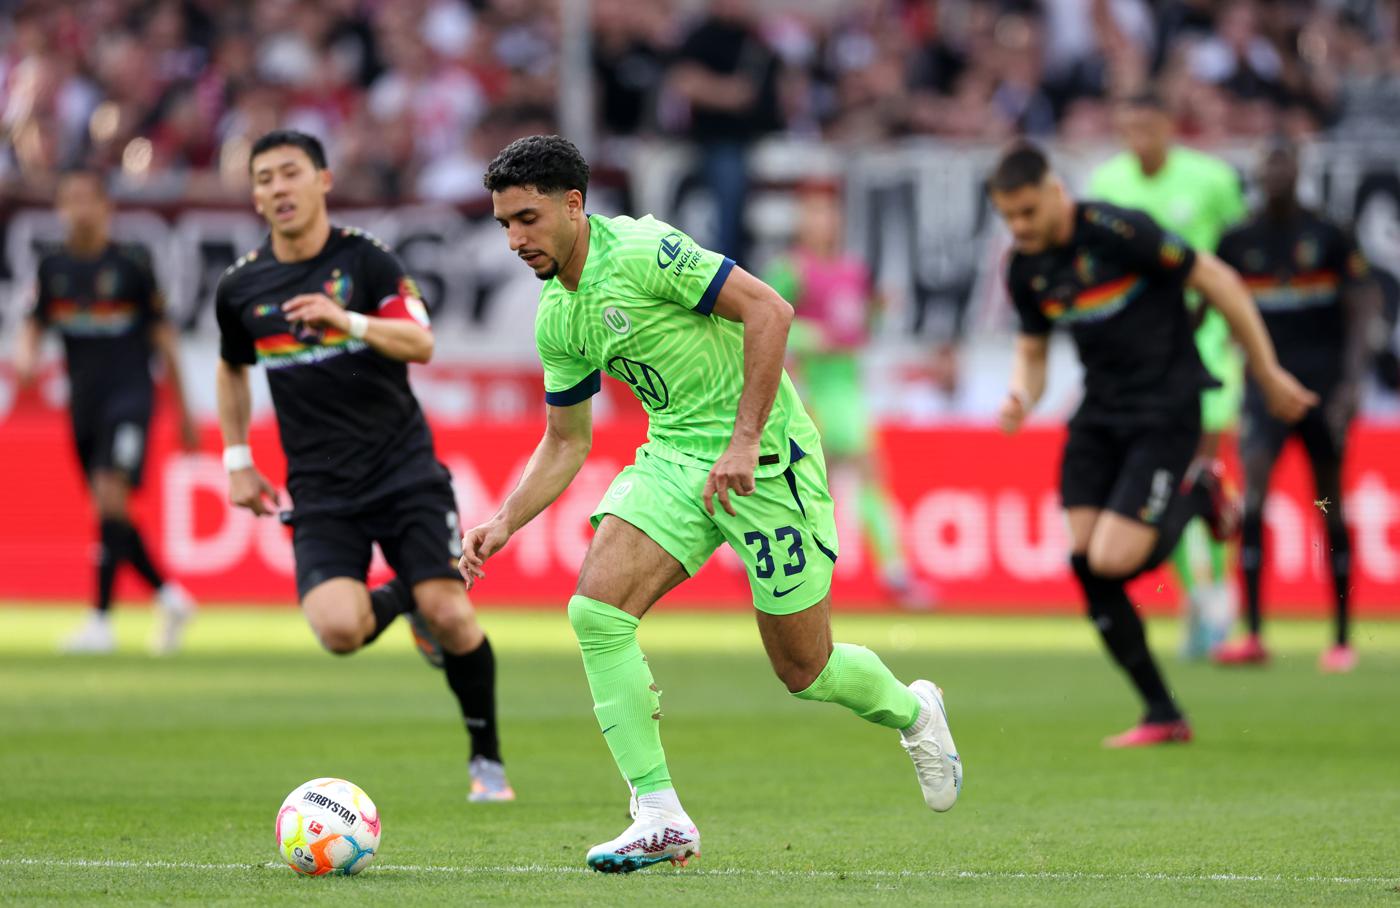 Stuttgart - Wolfsburg - 0-1. German Championship, 25th round. Match Review, Statistics